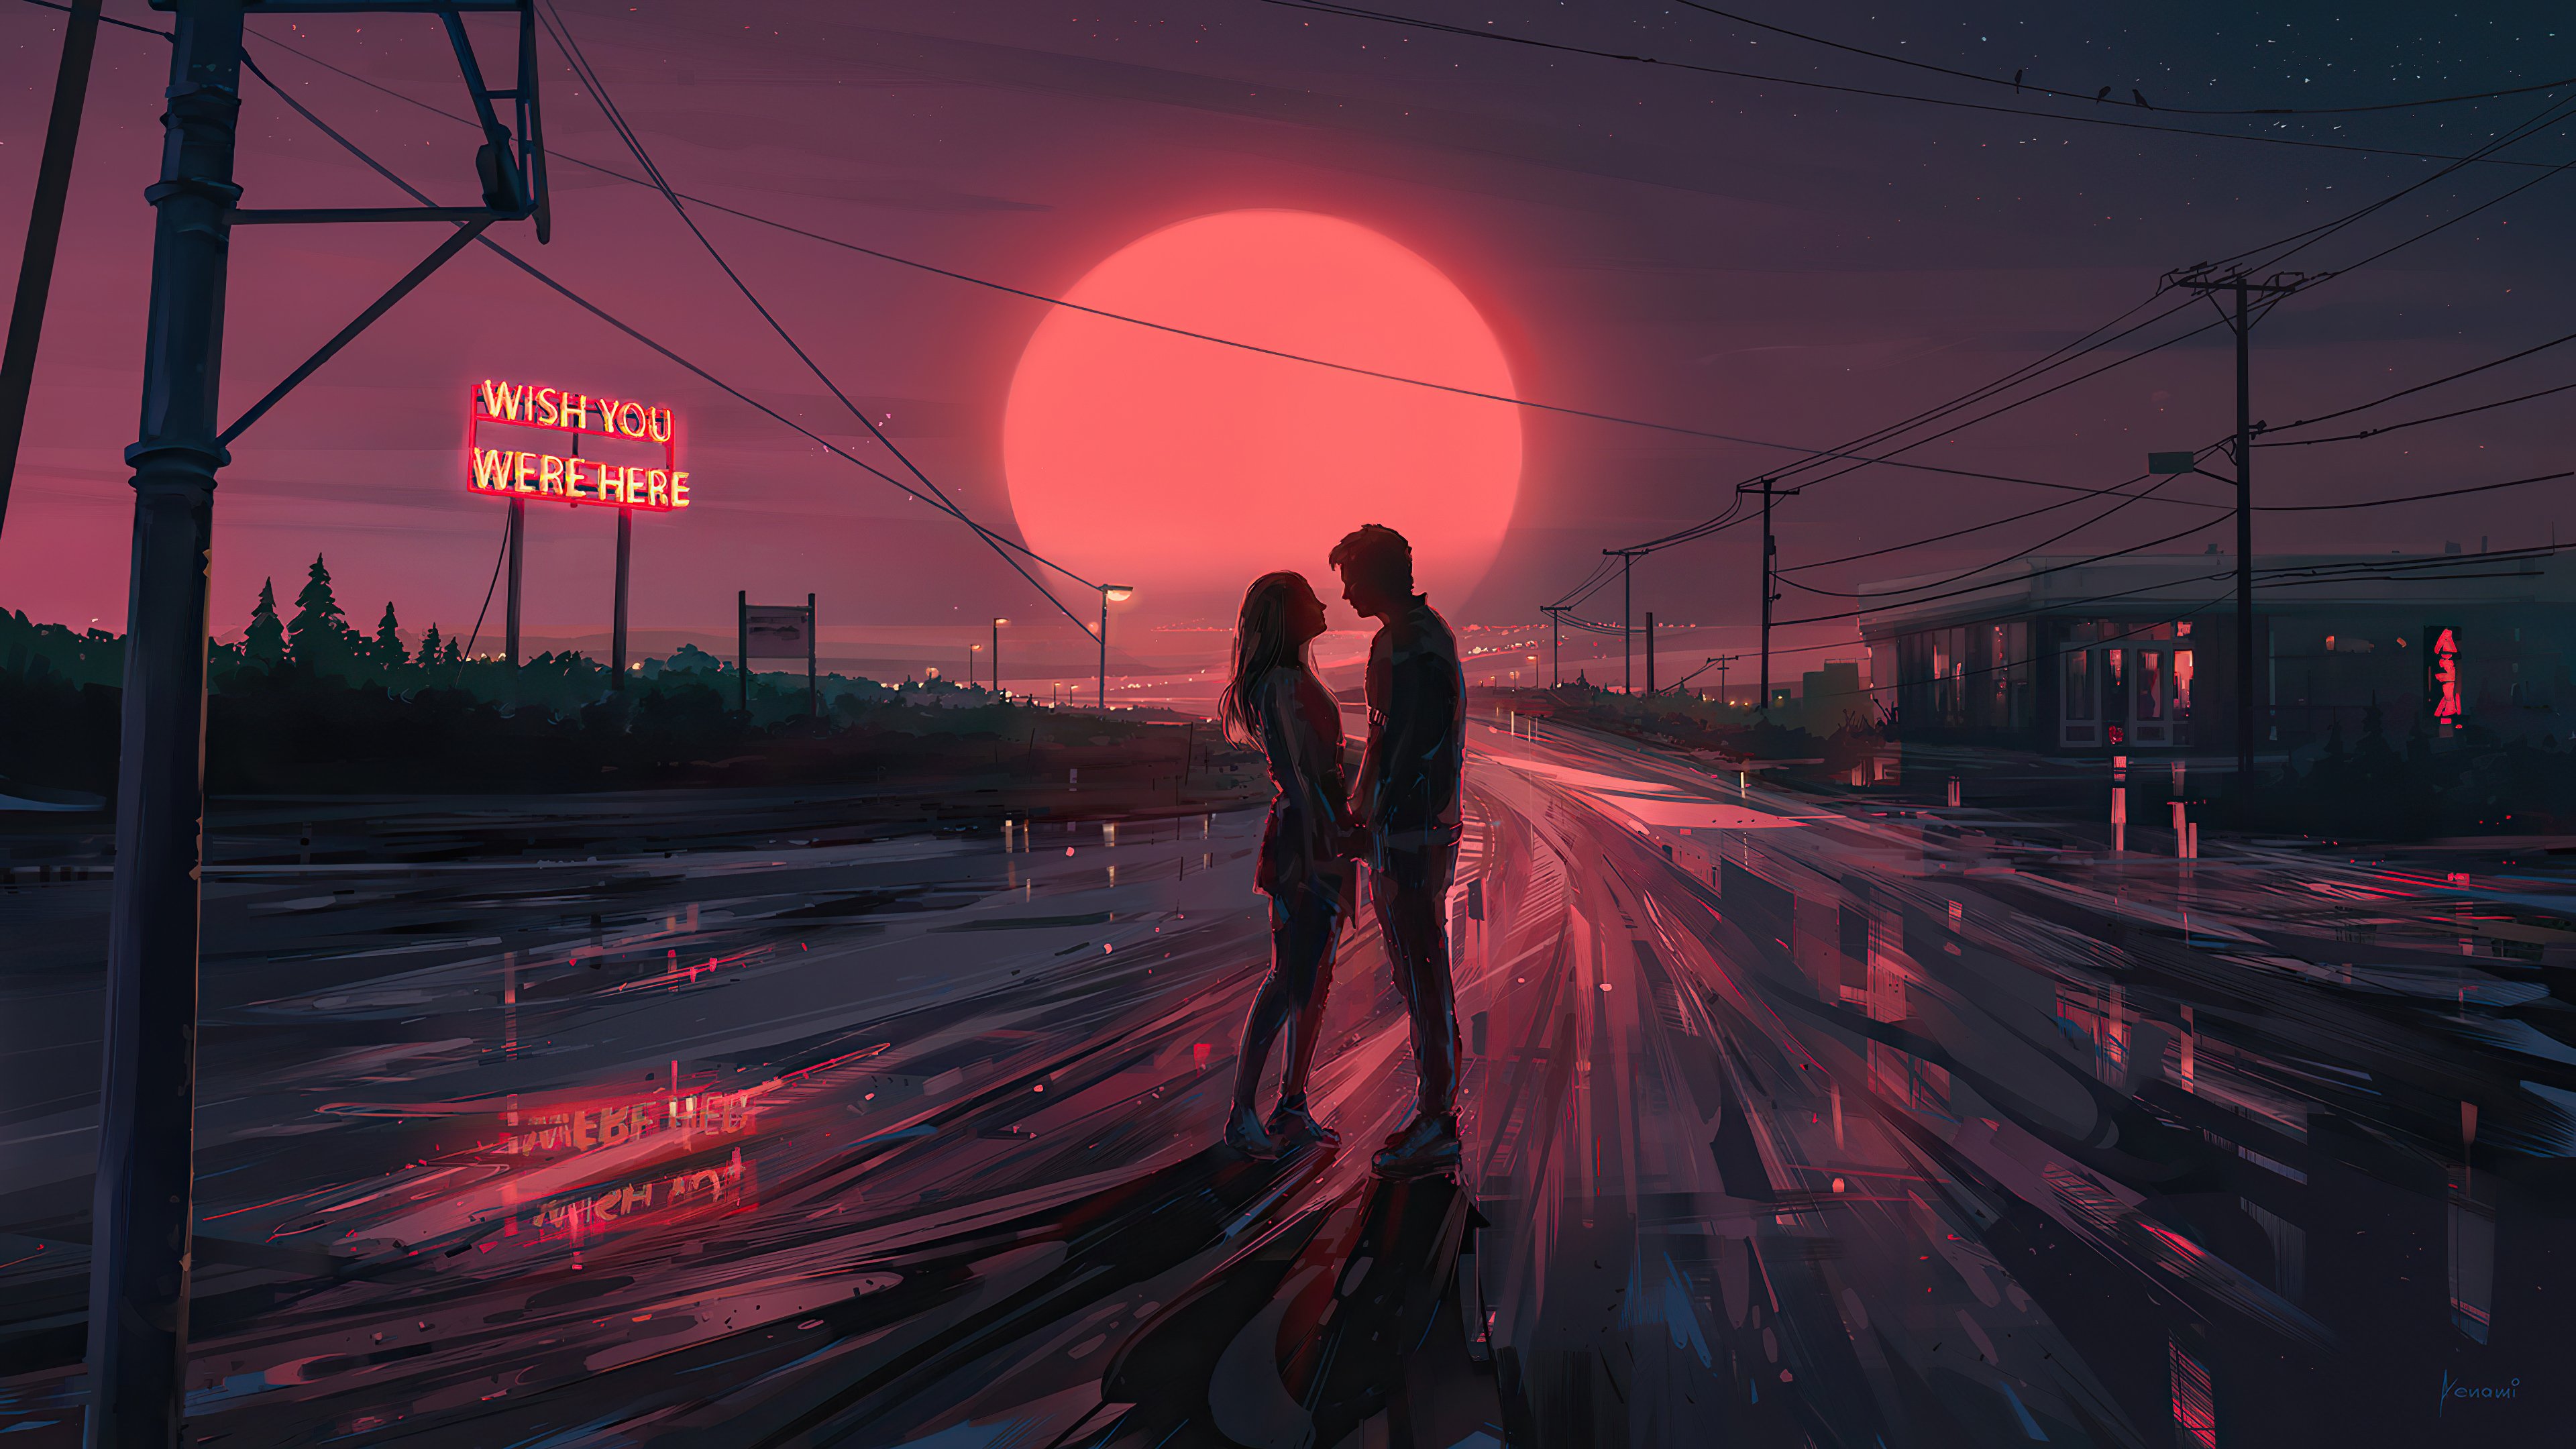 Fondos de pantalla Couple in sunset Illutration